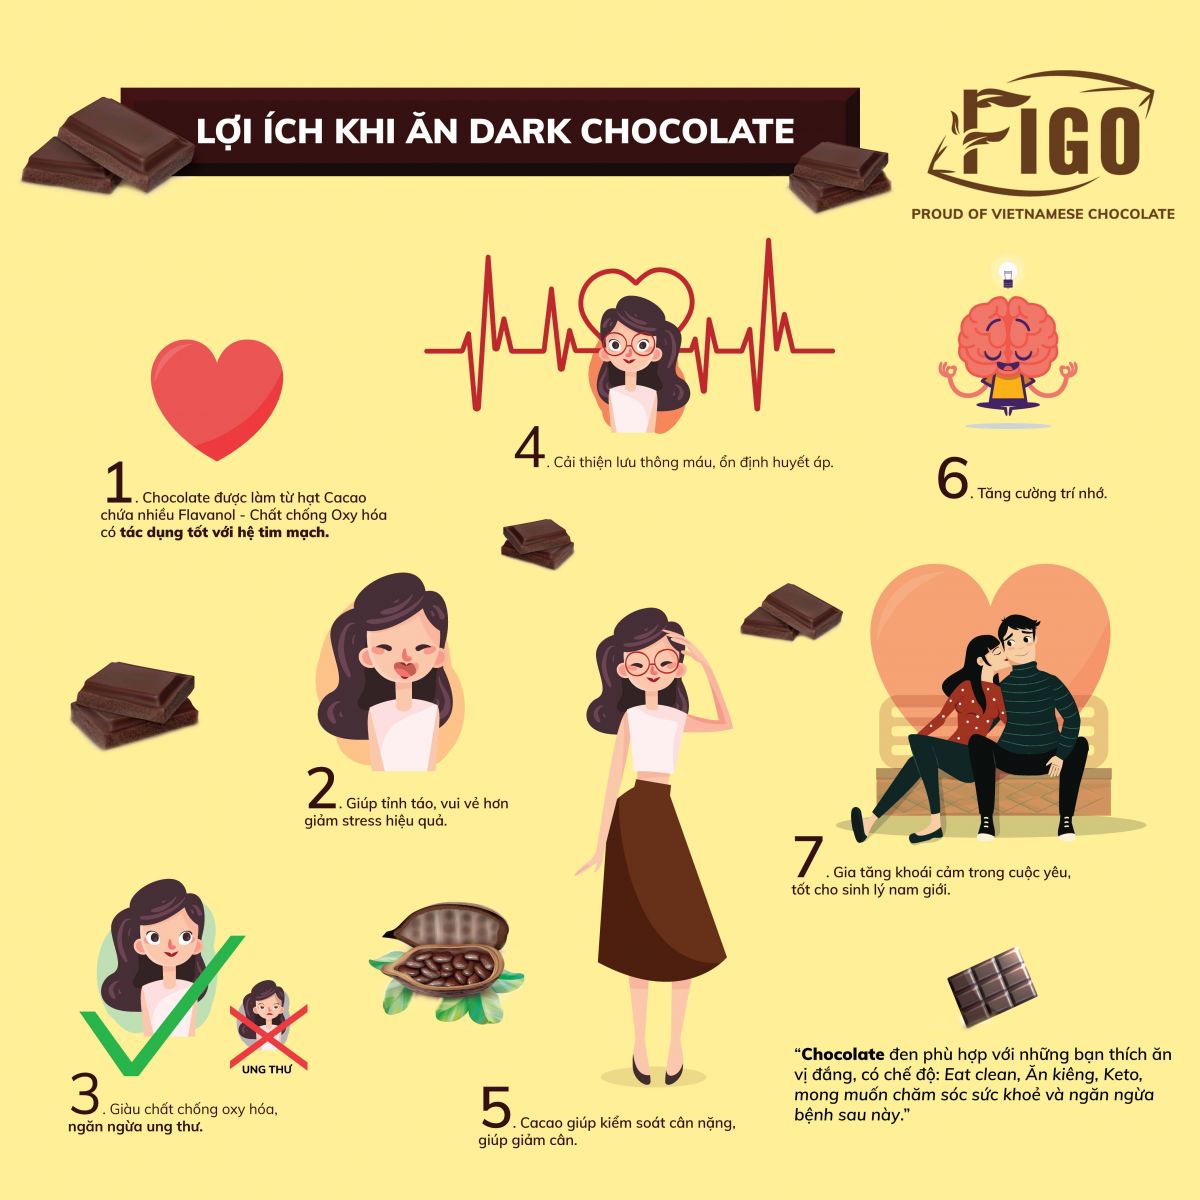 Trọn bộ 13 sản phẩm Chocolate Figo ( 2 loại Bột cacao và 11 loại Chocolate , mỗi thanh 50gram)